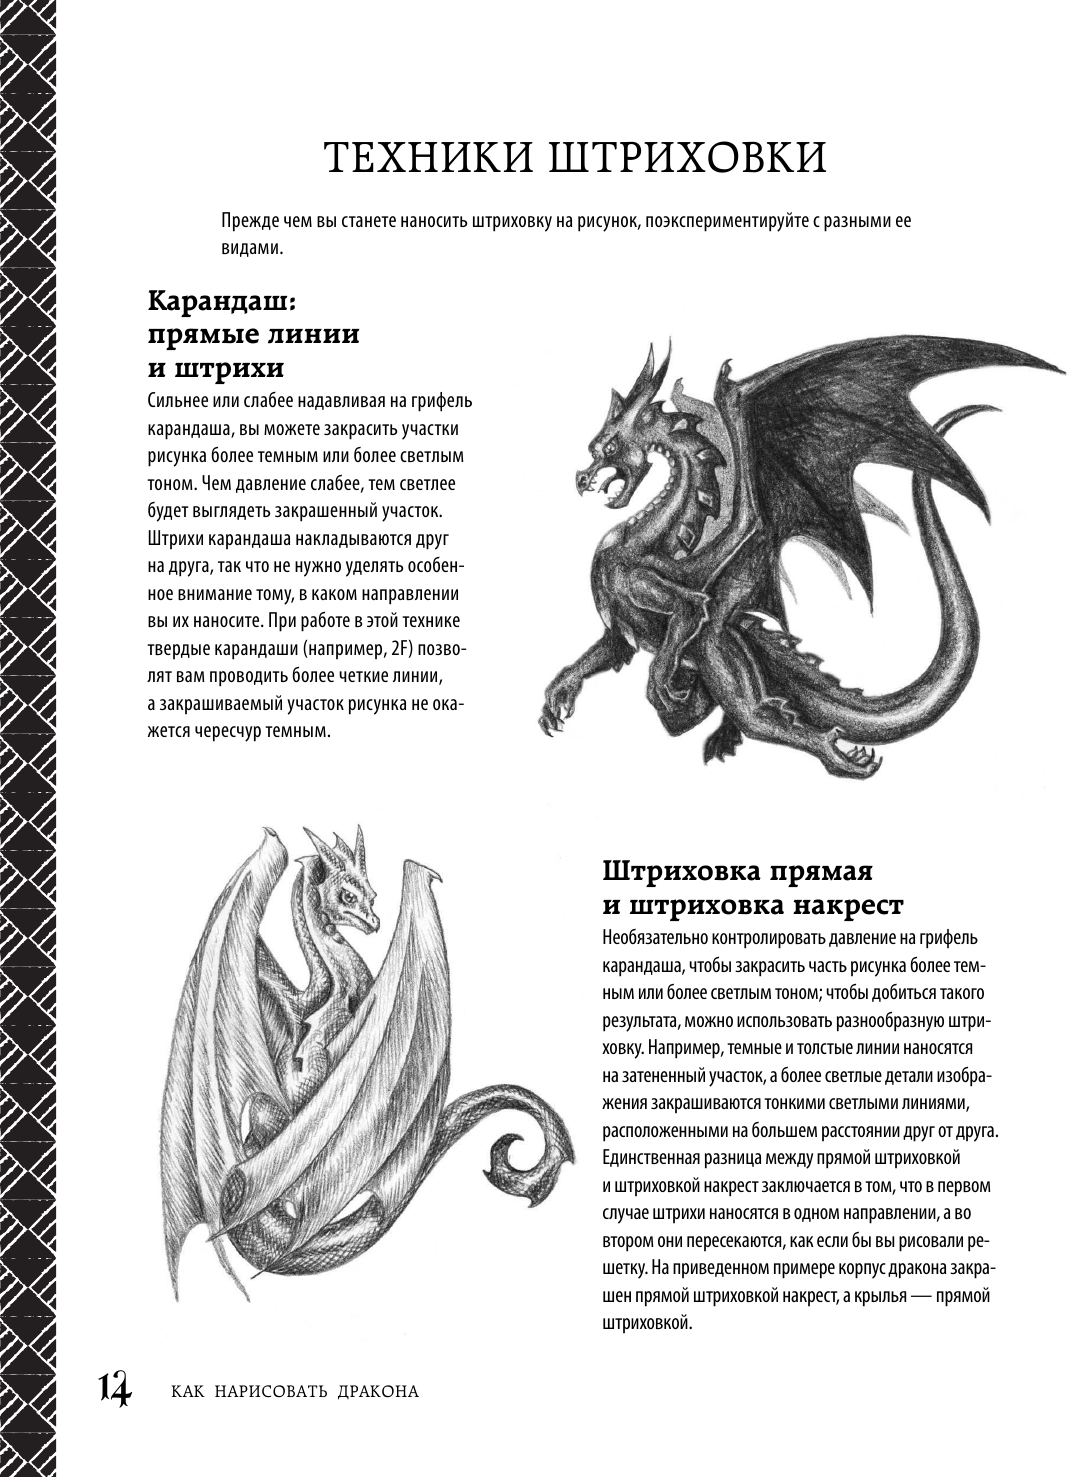 Как нарисовать дракона. Пошаговые техники и практические советы - фотография № 11